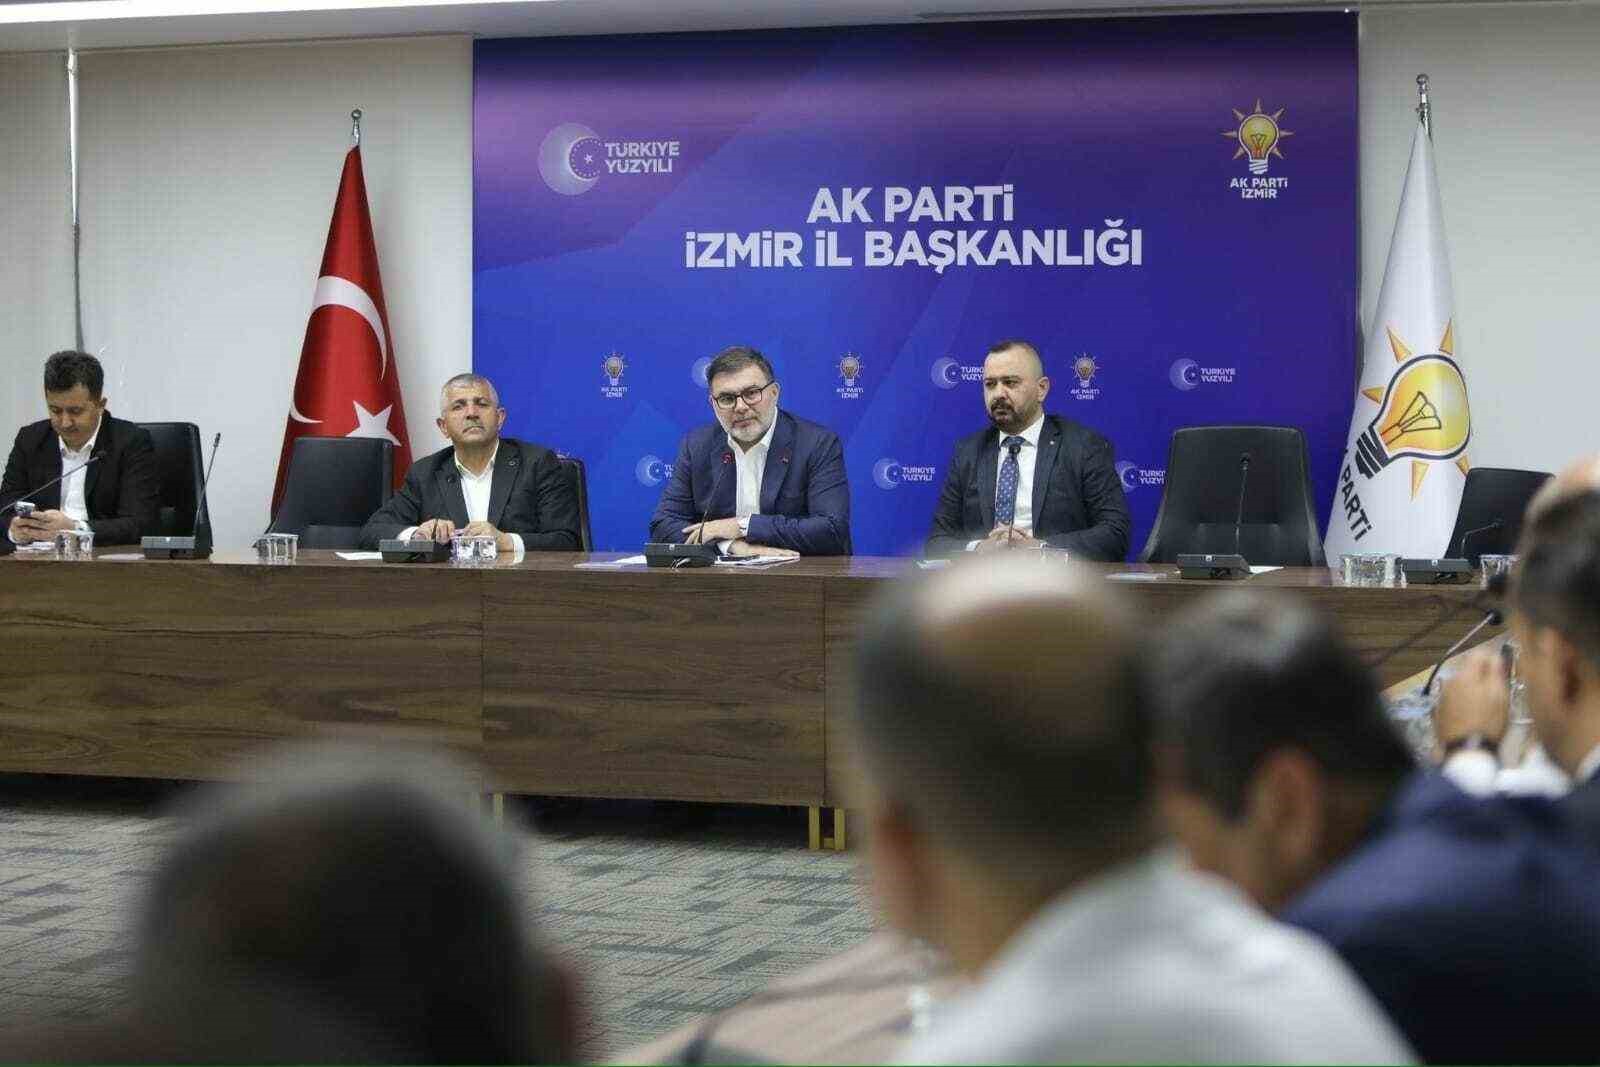 AK Parti İzmir İl Başkanı Saygılı: "Kum saati işlemeye başladı"